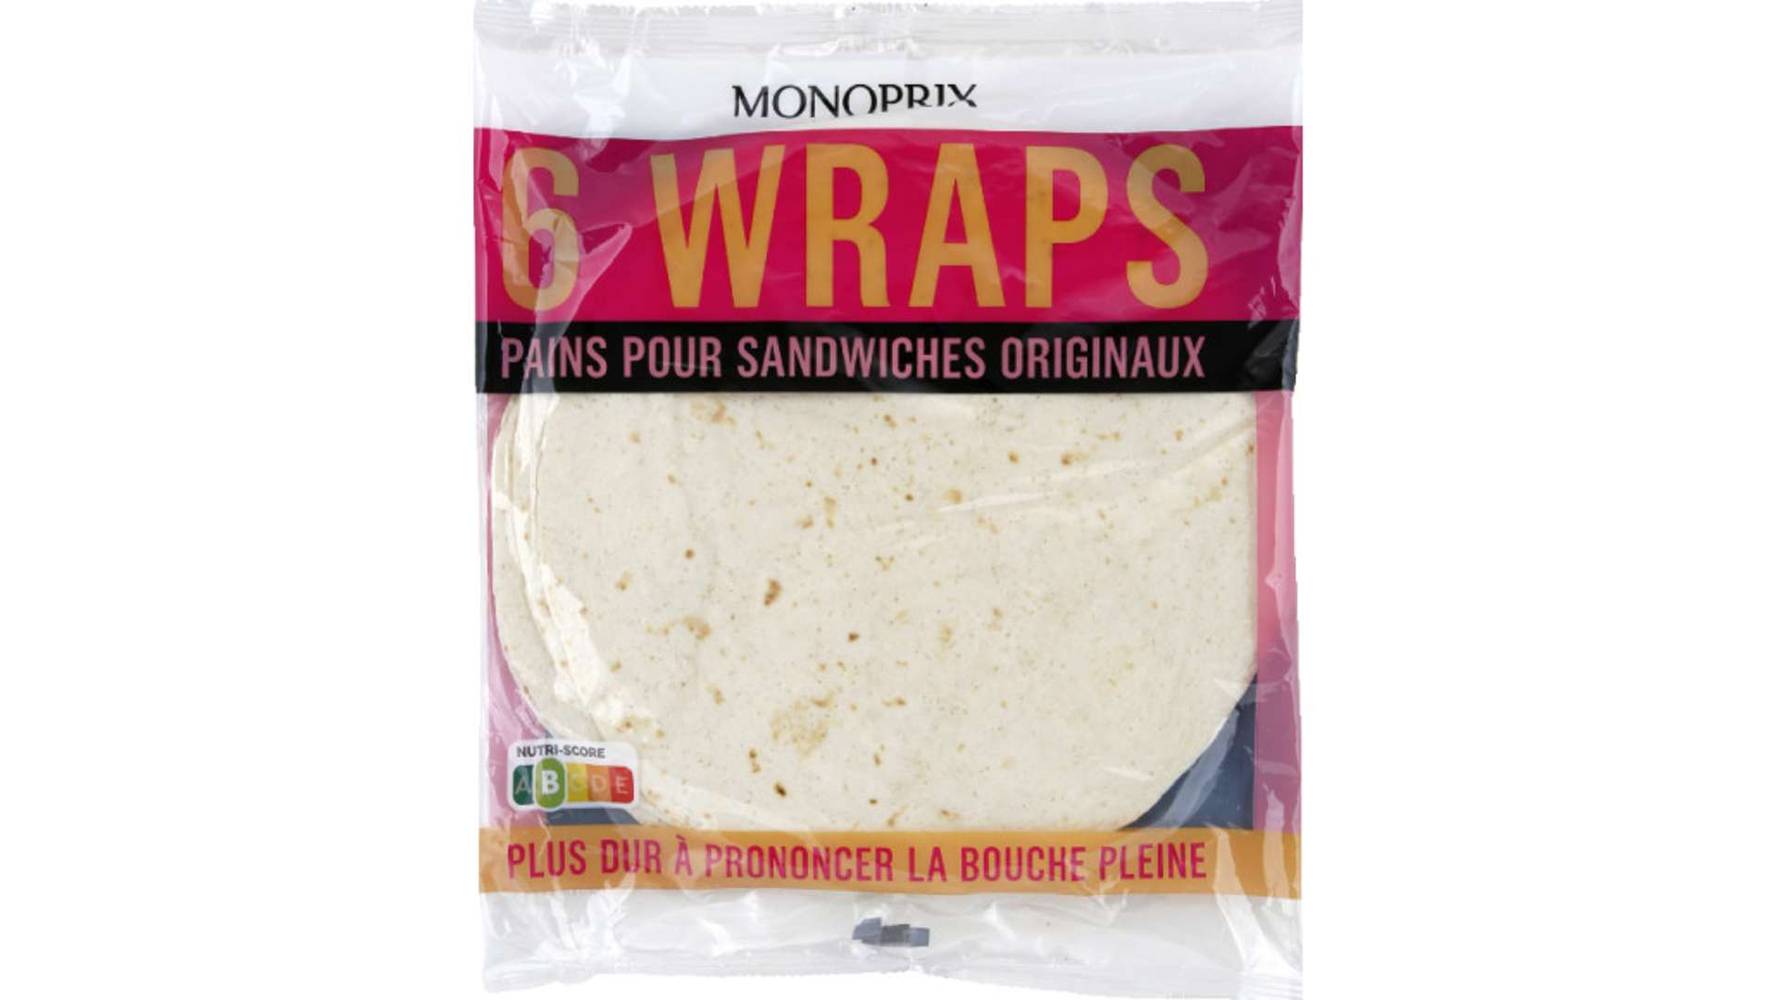 Monoprix Wraps pains pour sandwiches originaux Le paquet de 6, 370g